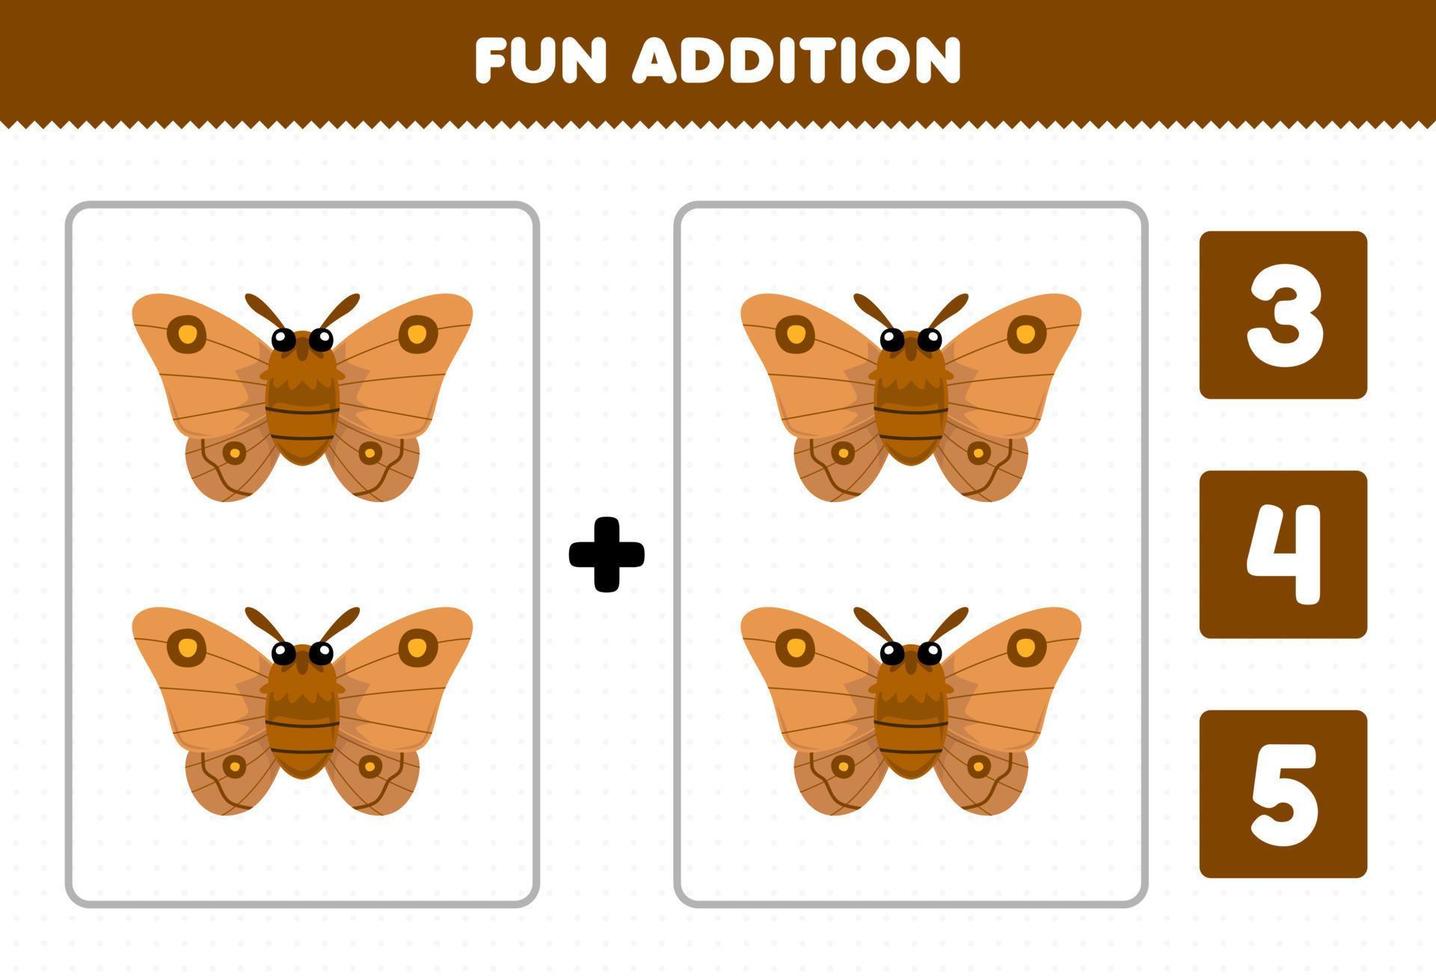 jogo de educação para crianças adição divertida por contagem e escolha a resposta correta da planilha de bug para impressão de mariposa de desenho animado fofo vetor